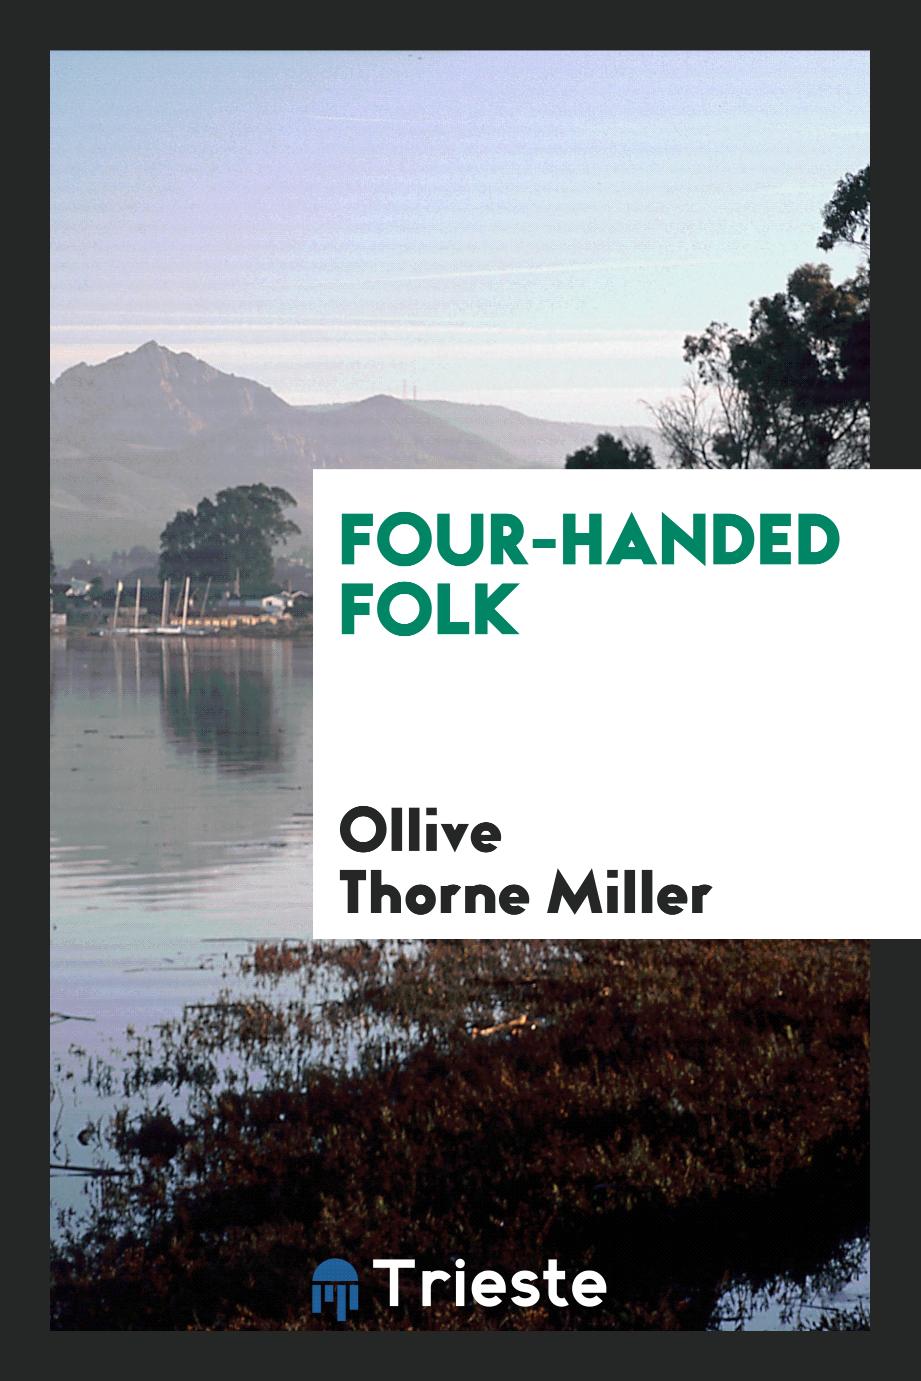 Four-handed folk